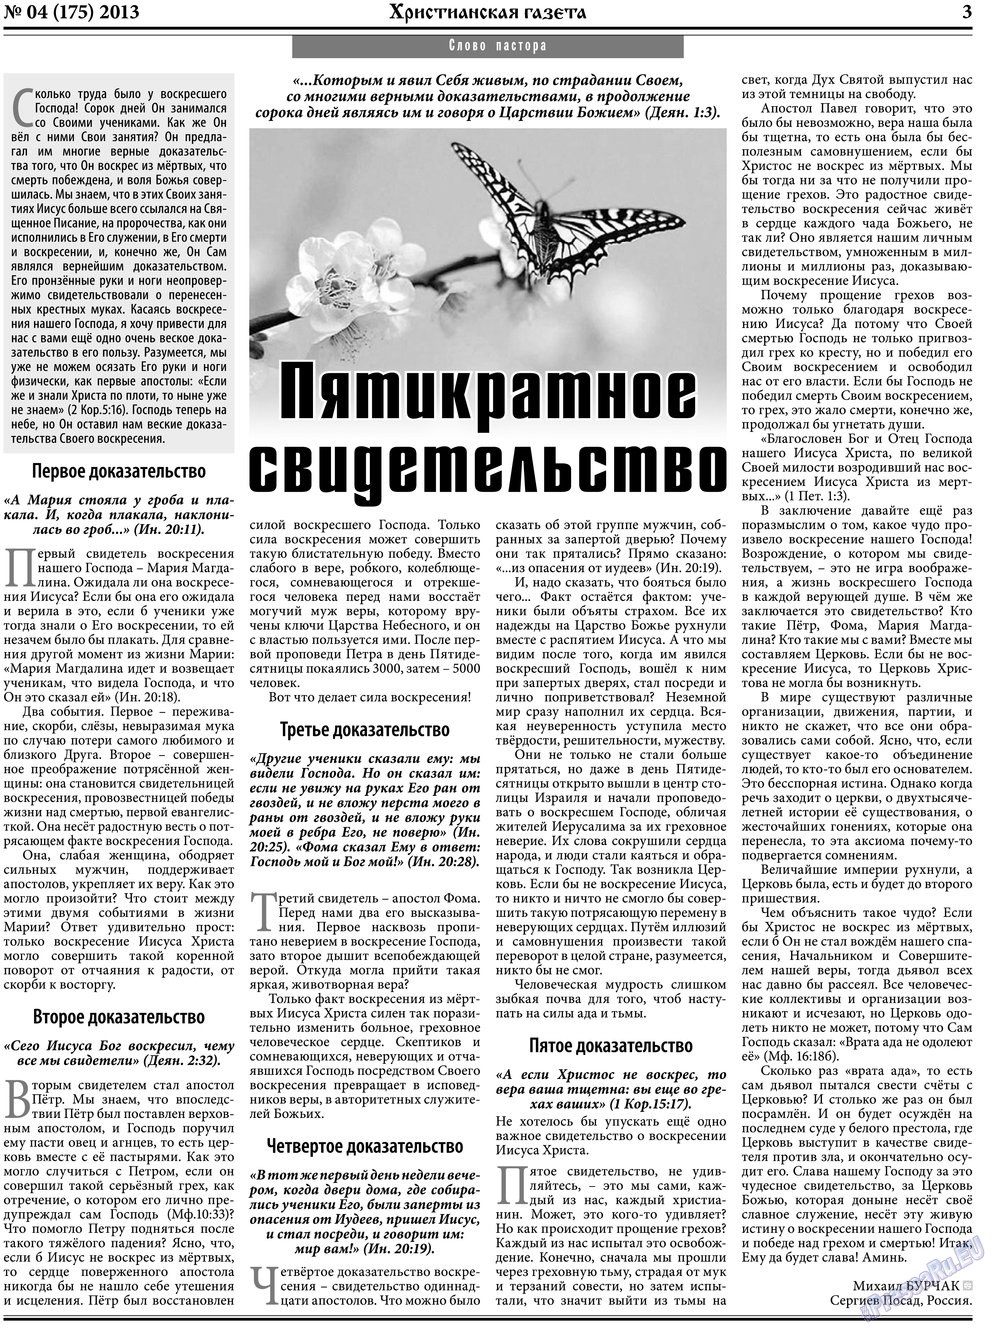 Христианская газета (газета). 2013 год, номер 4, стр. 3